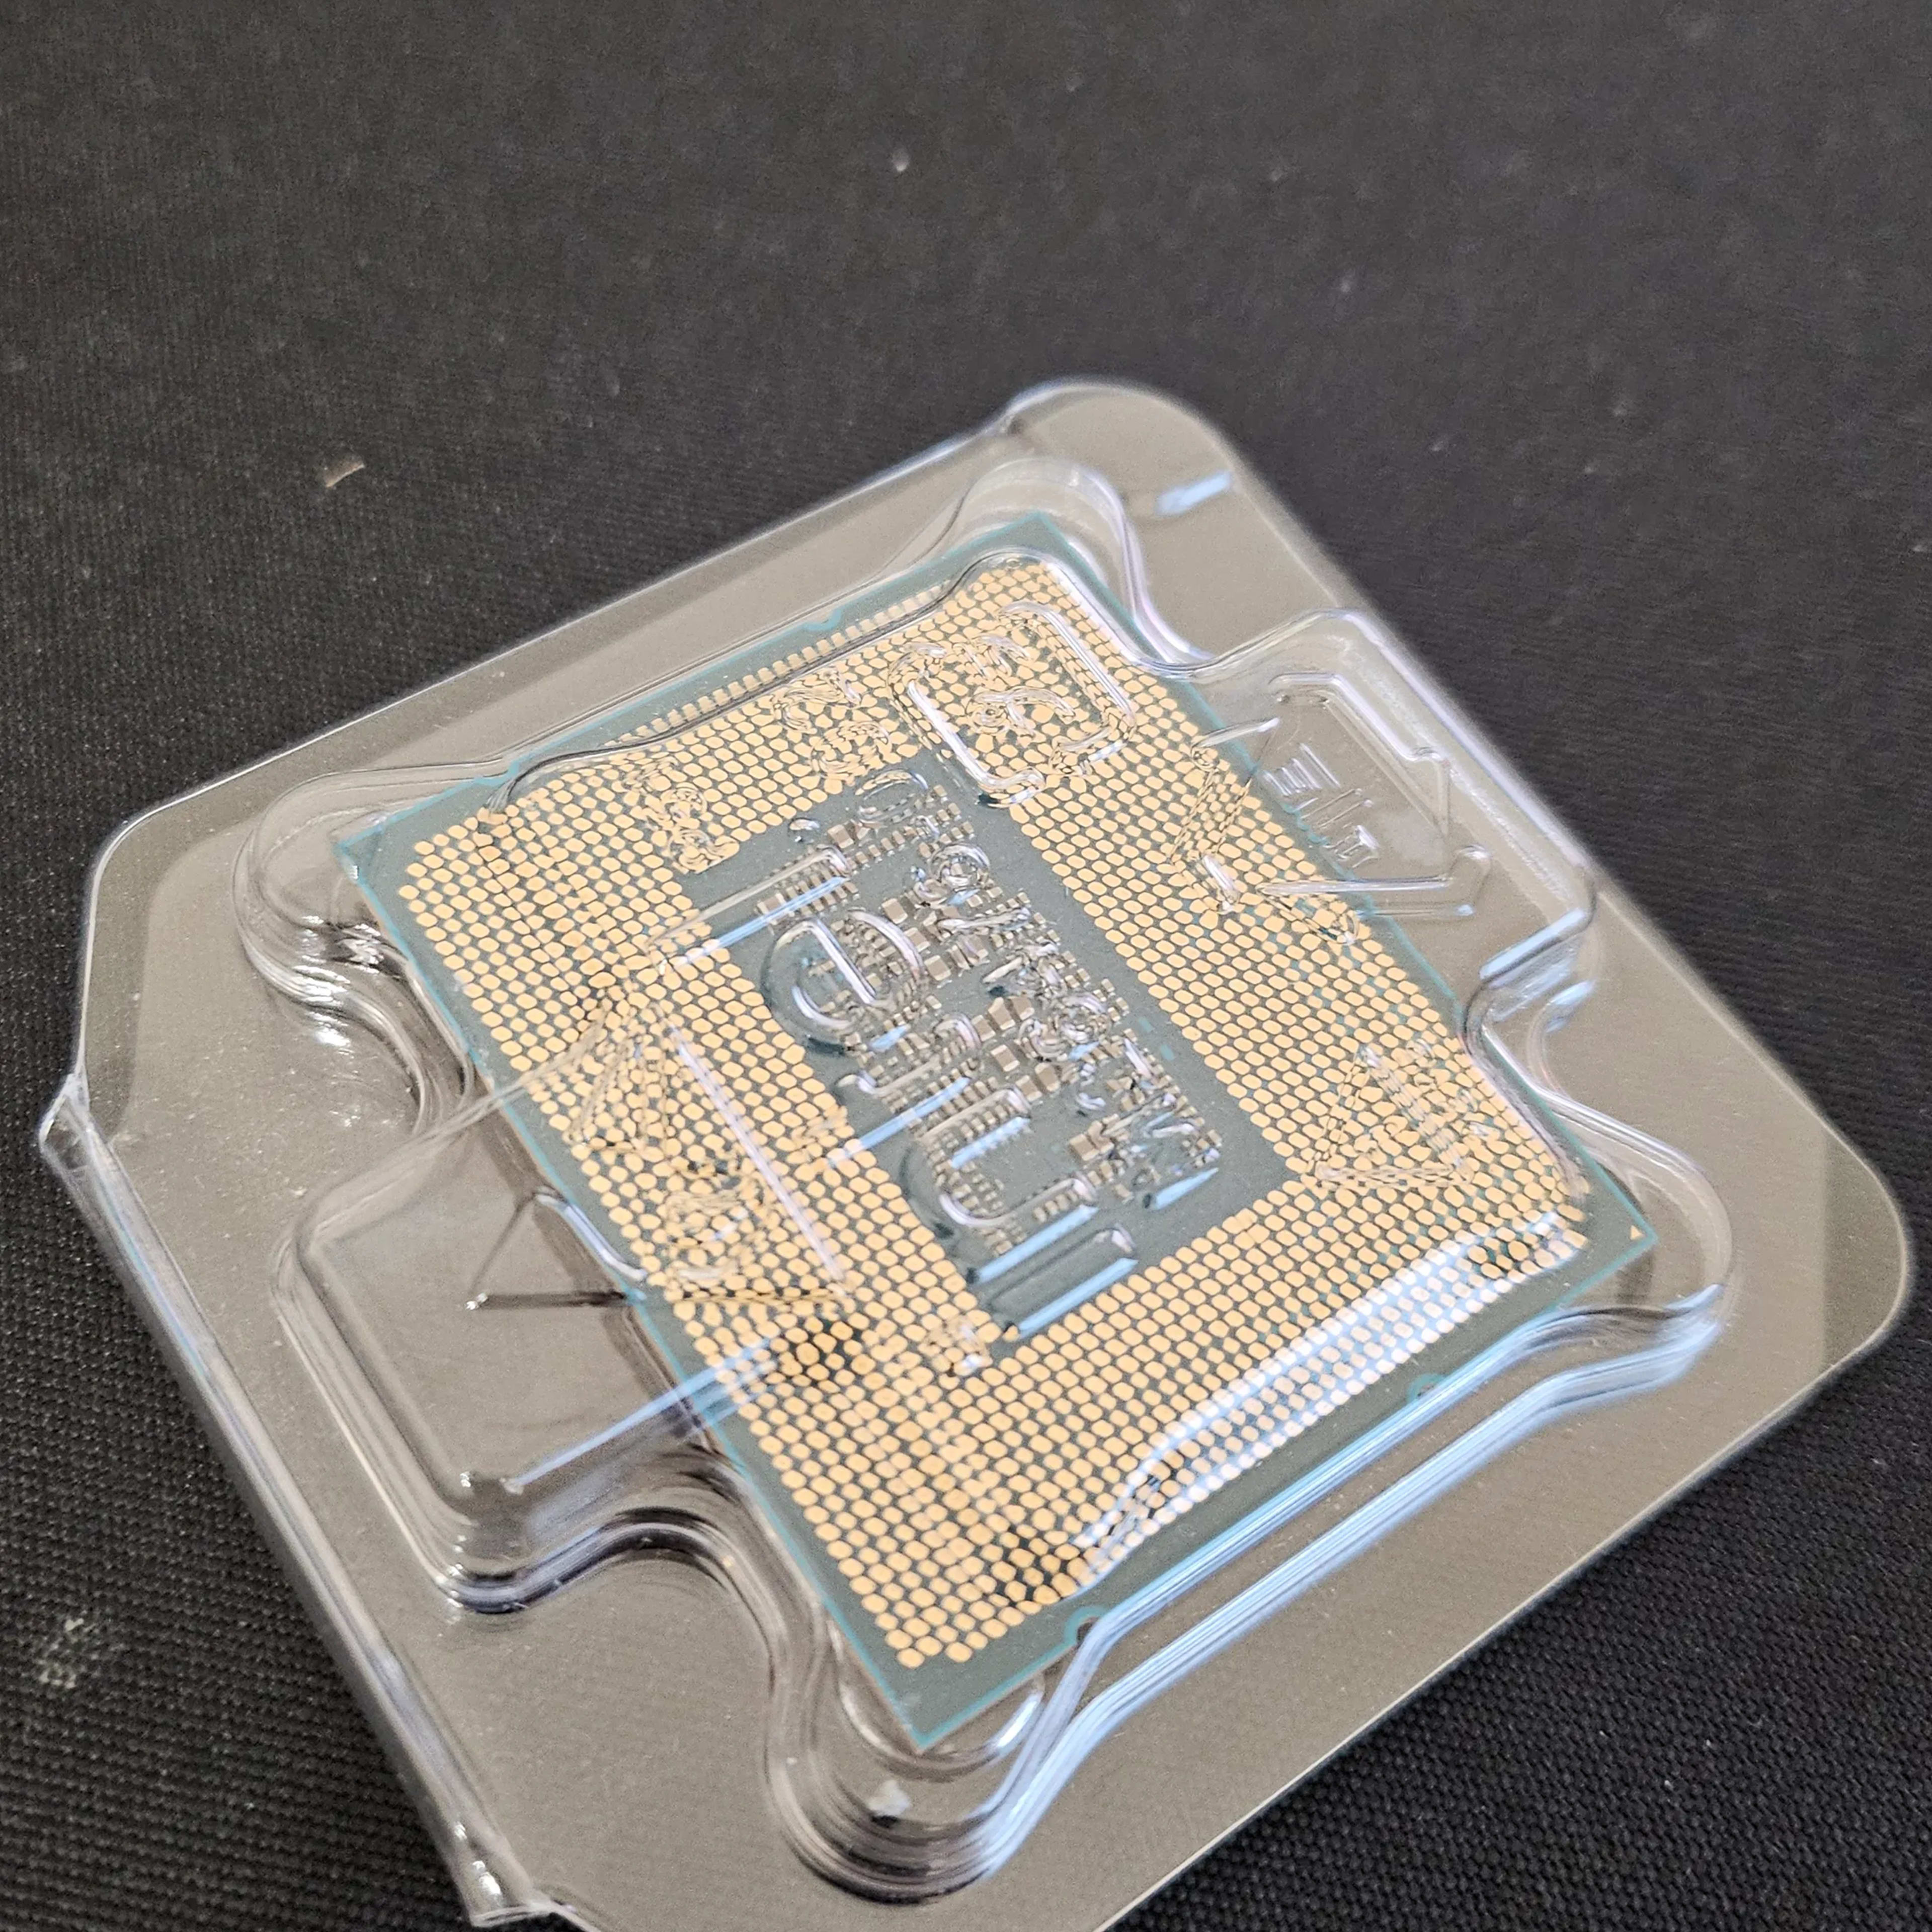 Intel i5-12400F